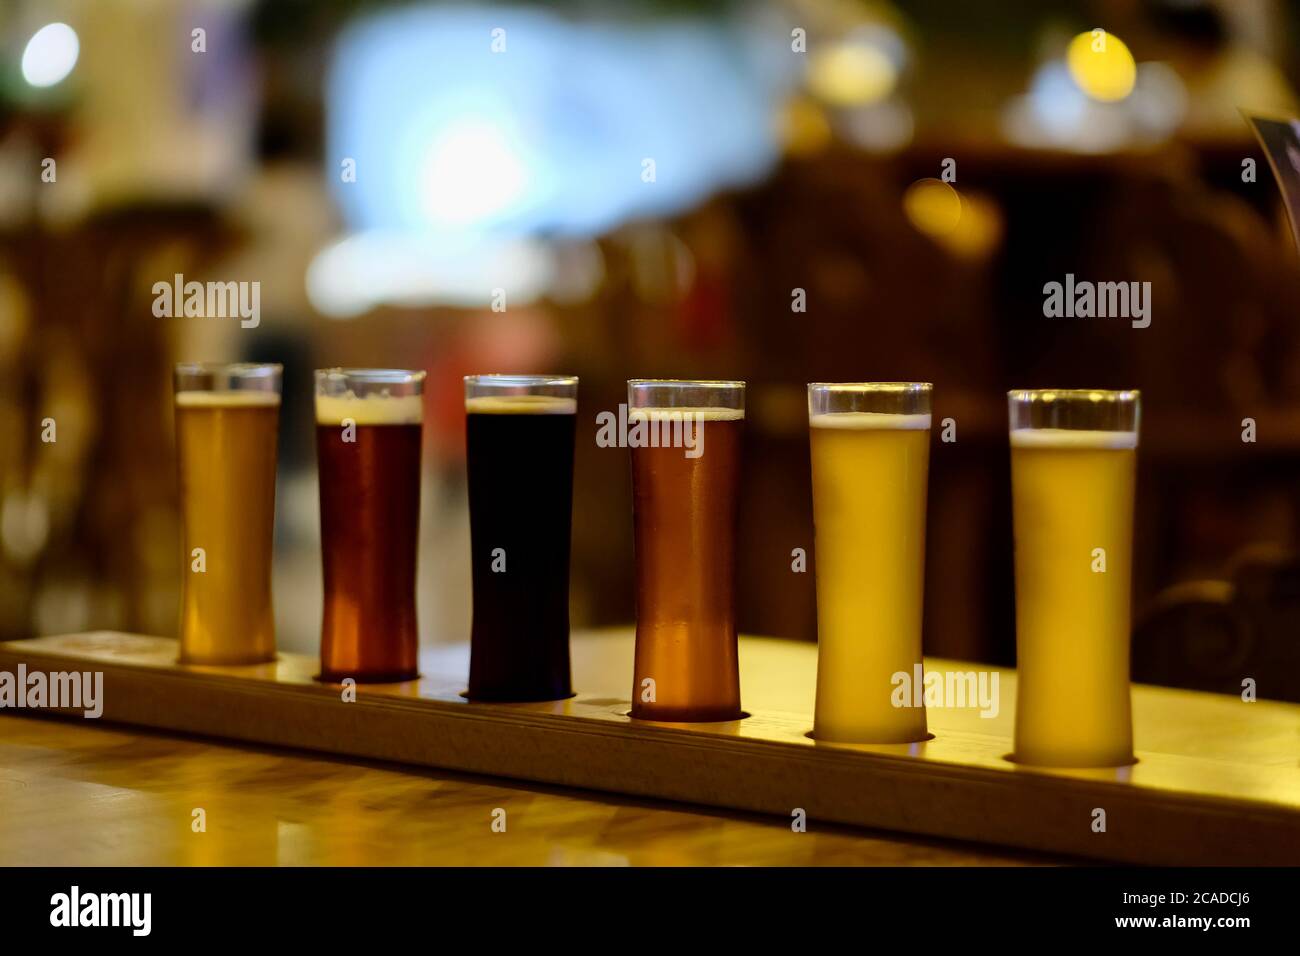 gros plan sur divers types de bière dans des verres de pinte sur une table en bois brillant dans le bar. Verres de bière en différentes couleurs. Arrière-plan flou Banque D'Images